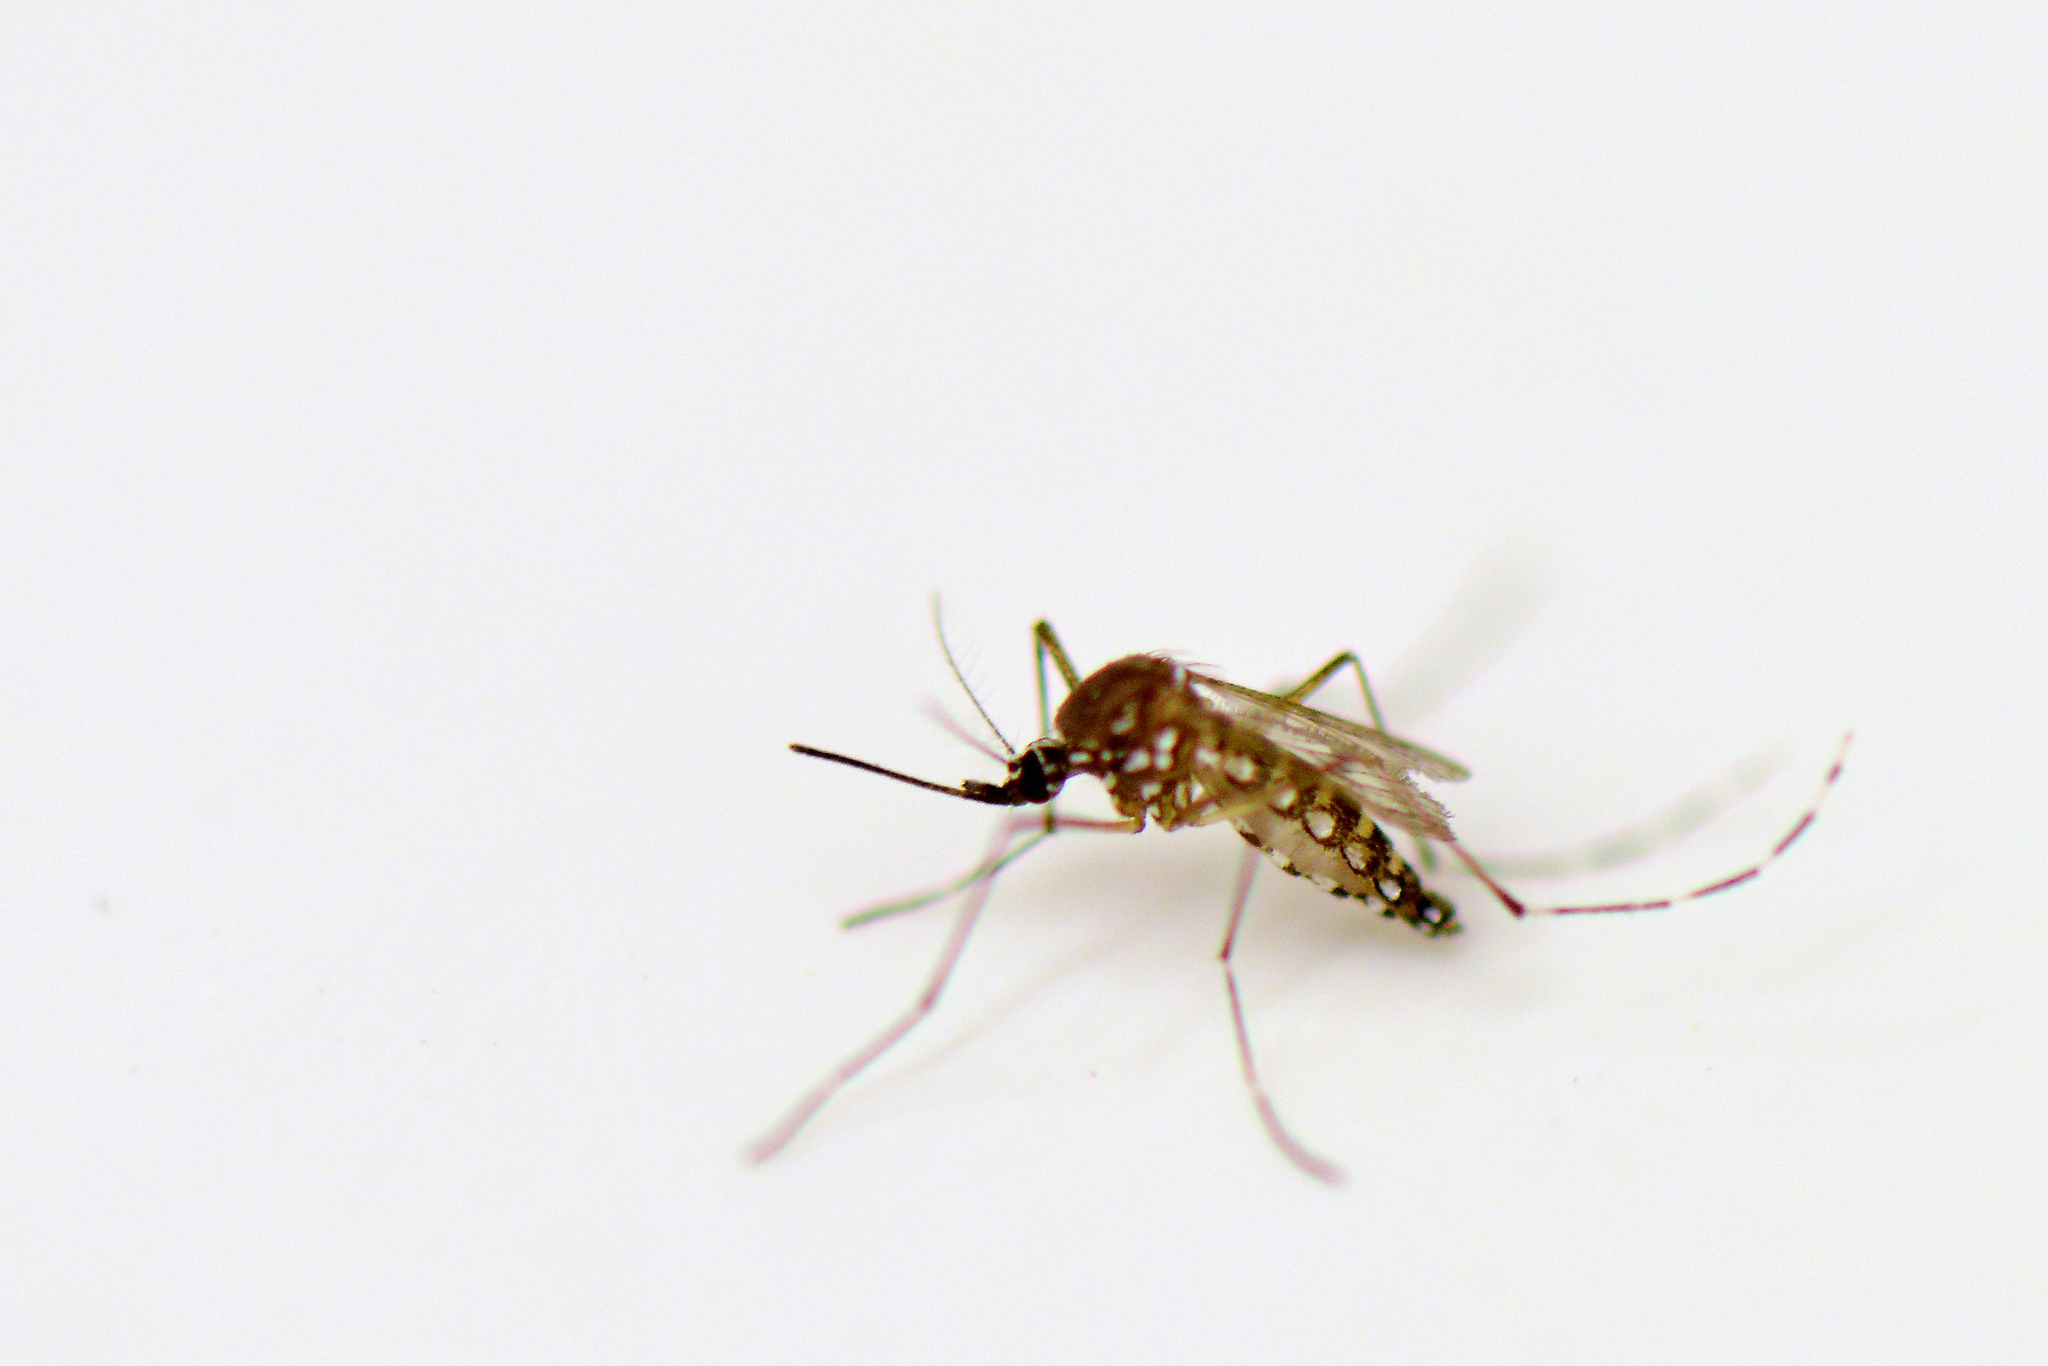 Les autorités thaïlandaises ont averti la population face au risque de Chikungunya, notamment dans le sud du pays